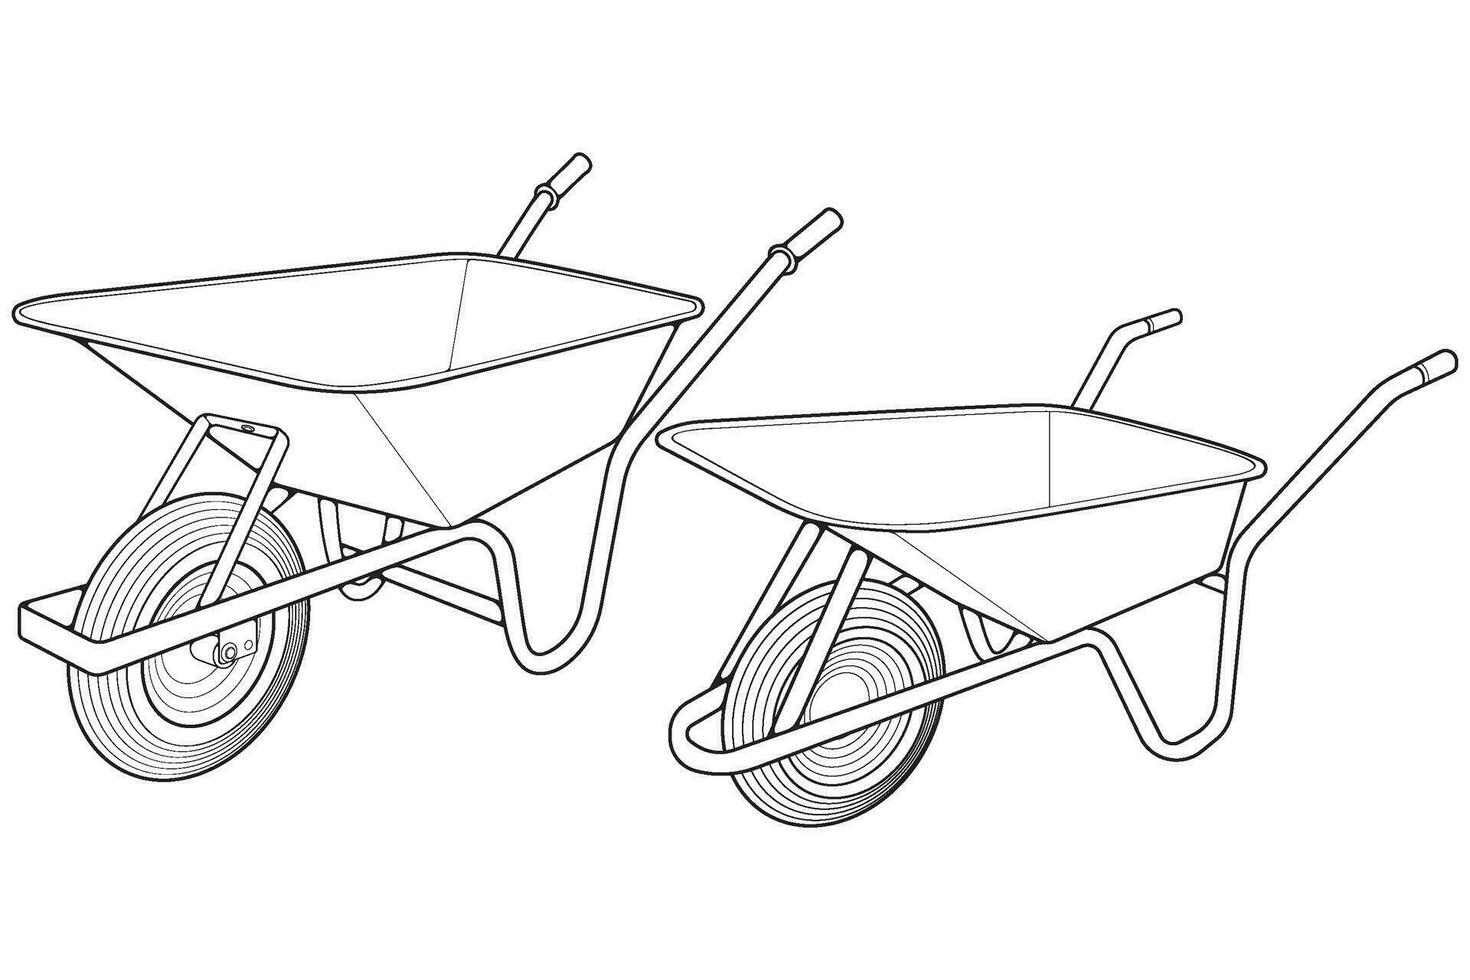 uppsättning av enda hjul kärra vektor .vagn linje konst vektor illustration isolerat på vit bakgrund. hjul kärra översikt illustration.